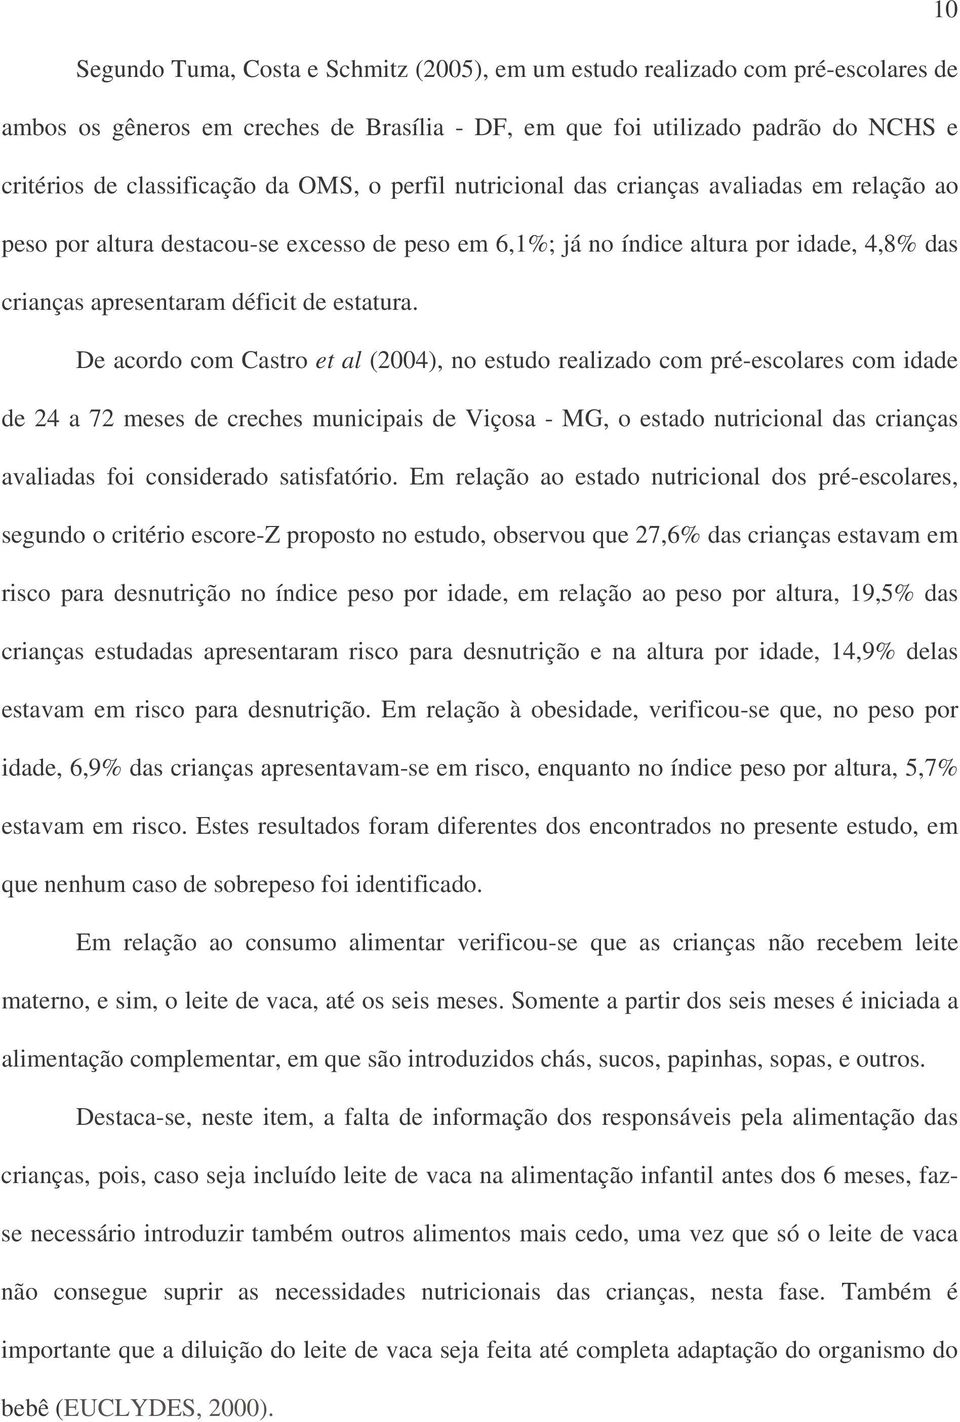 De acordo com Castro et al (2004), no estudo realizado com pré-escolares com idade de 24 a 72 meses de creches municipais de Viçosa - MG, o estado nutricional das crianças avaliadas foi considerado